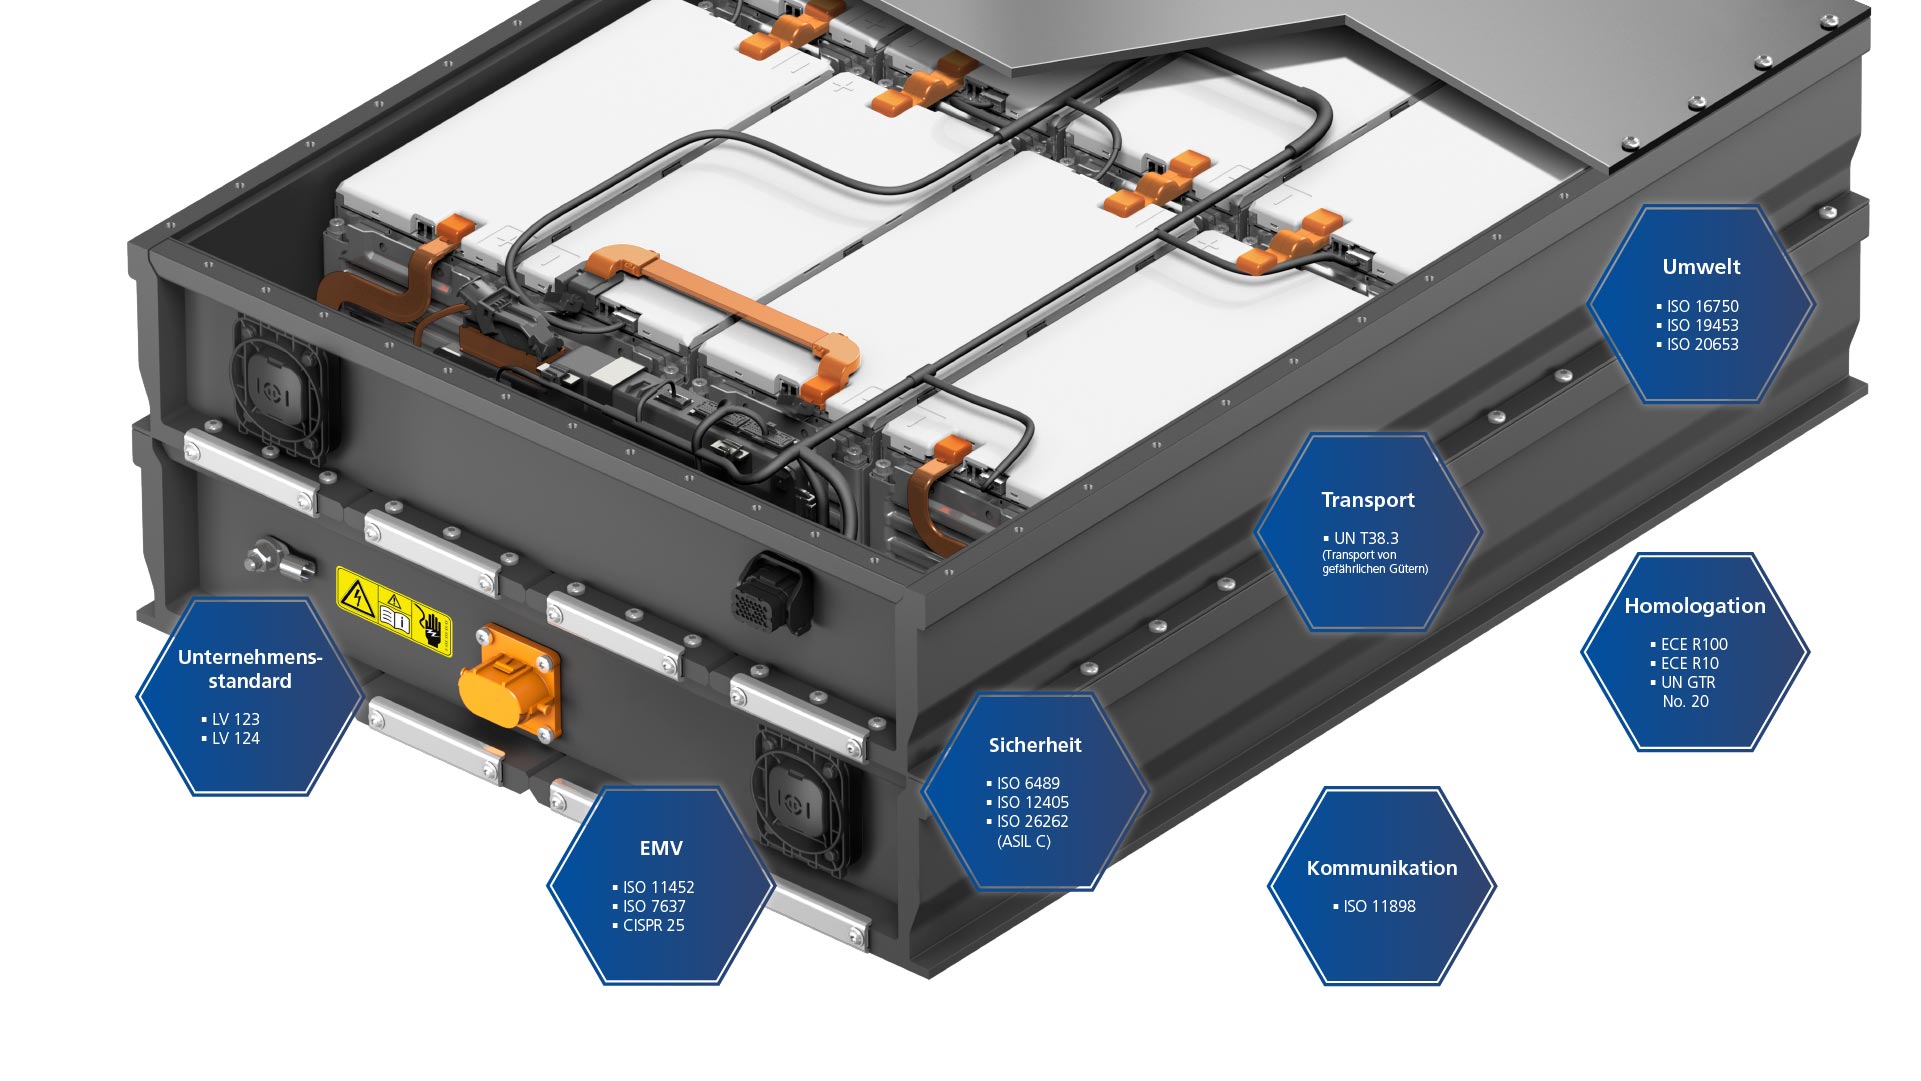 Webasto Batterieloesungen Standardbatteriesysteme fuer leichte Nutzfahrzeuge Infografik technische Details